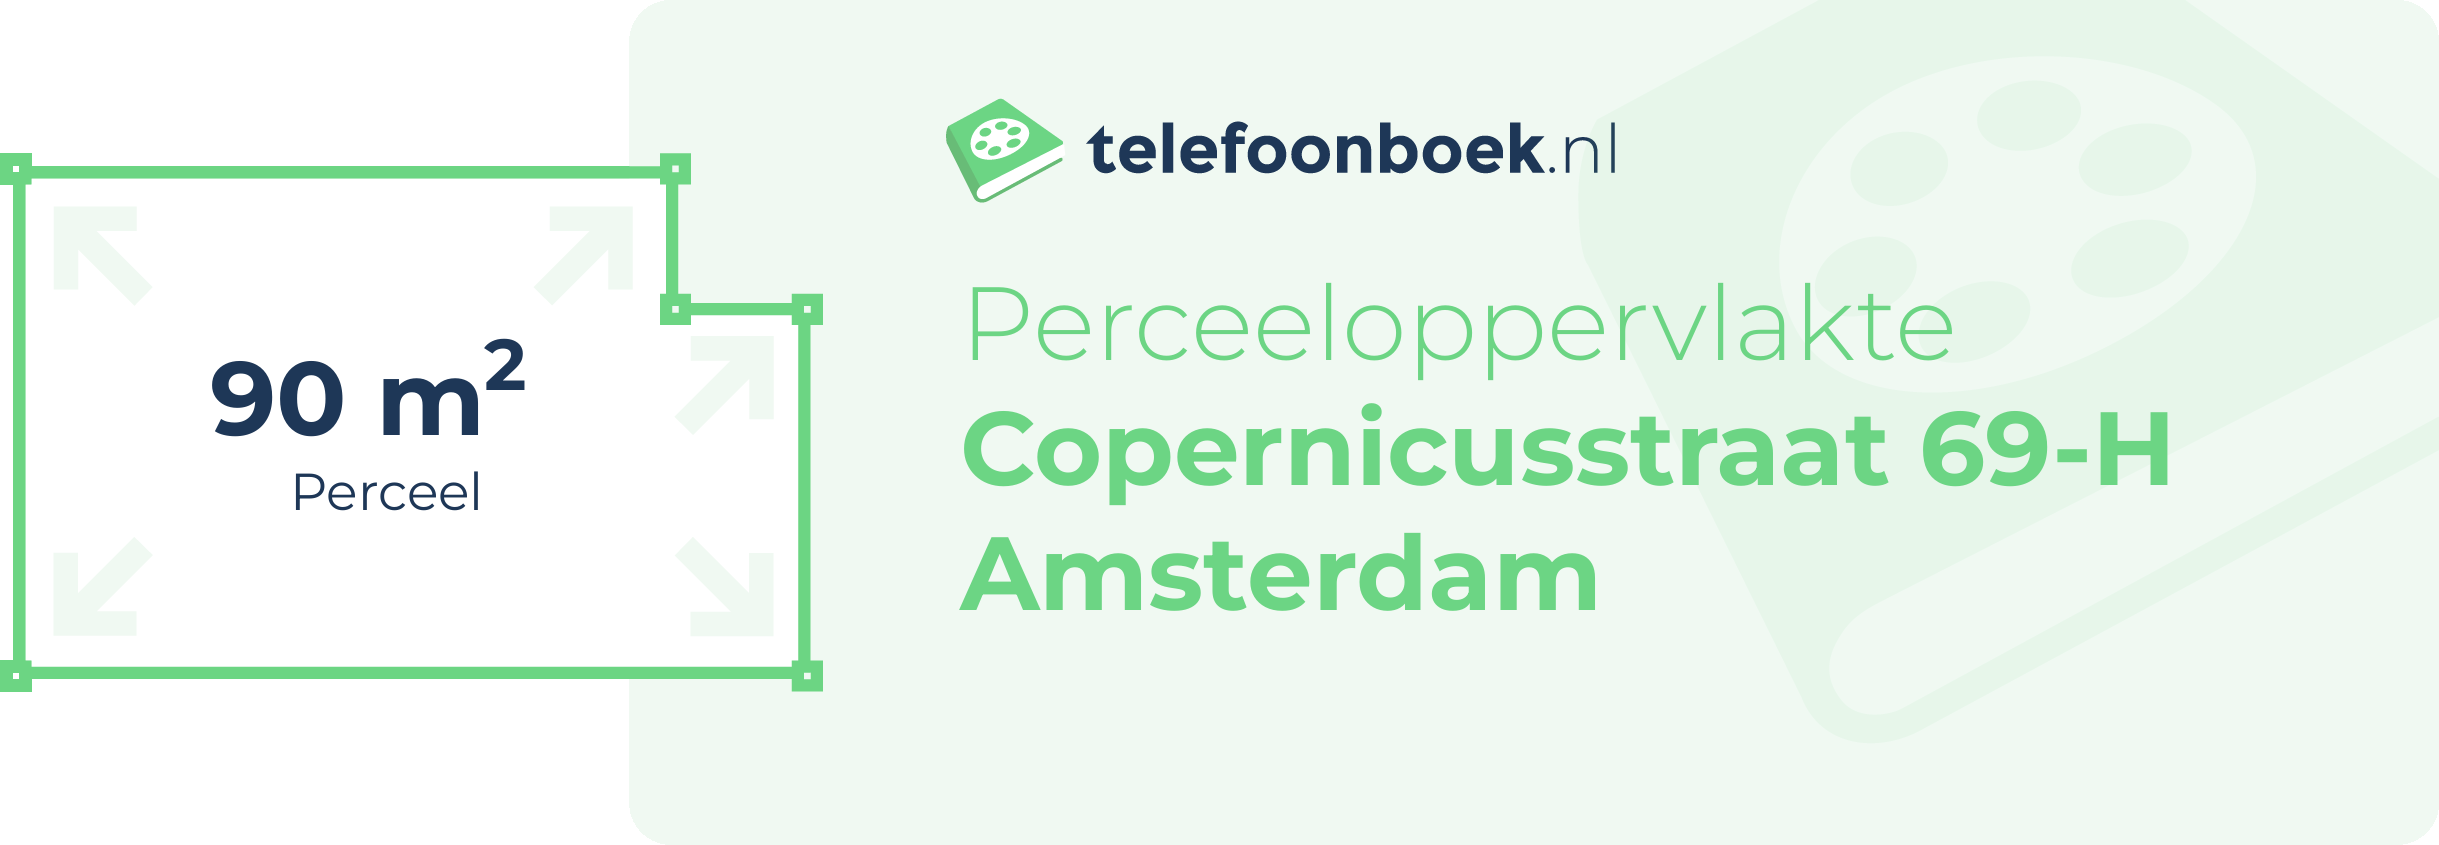 Perceeloppervlakte Copernicusstraat 69-H Amsterdam